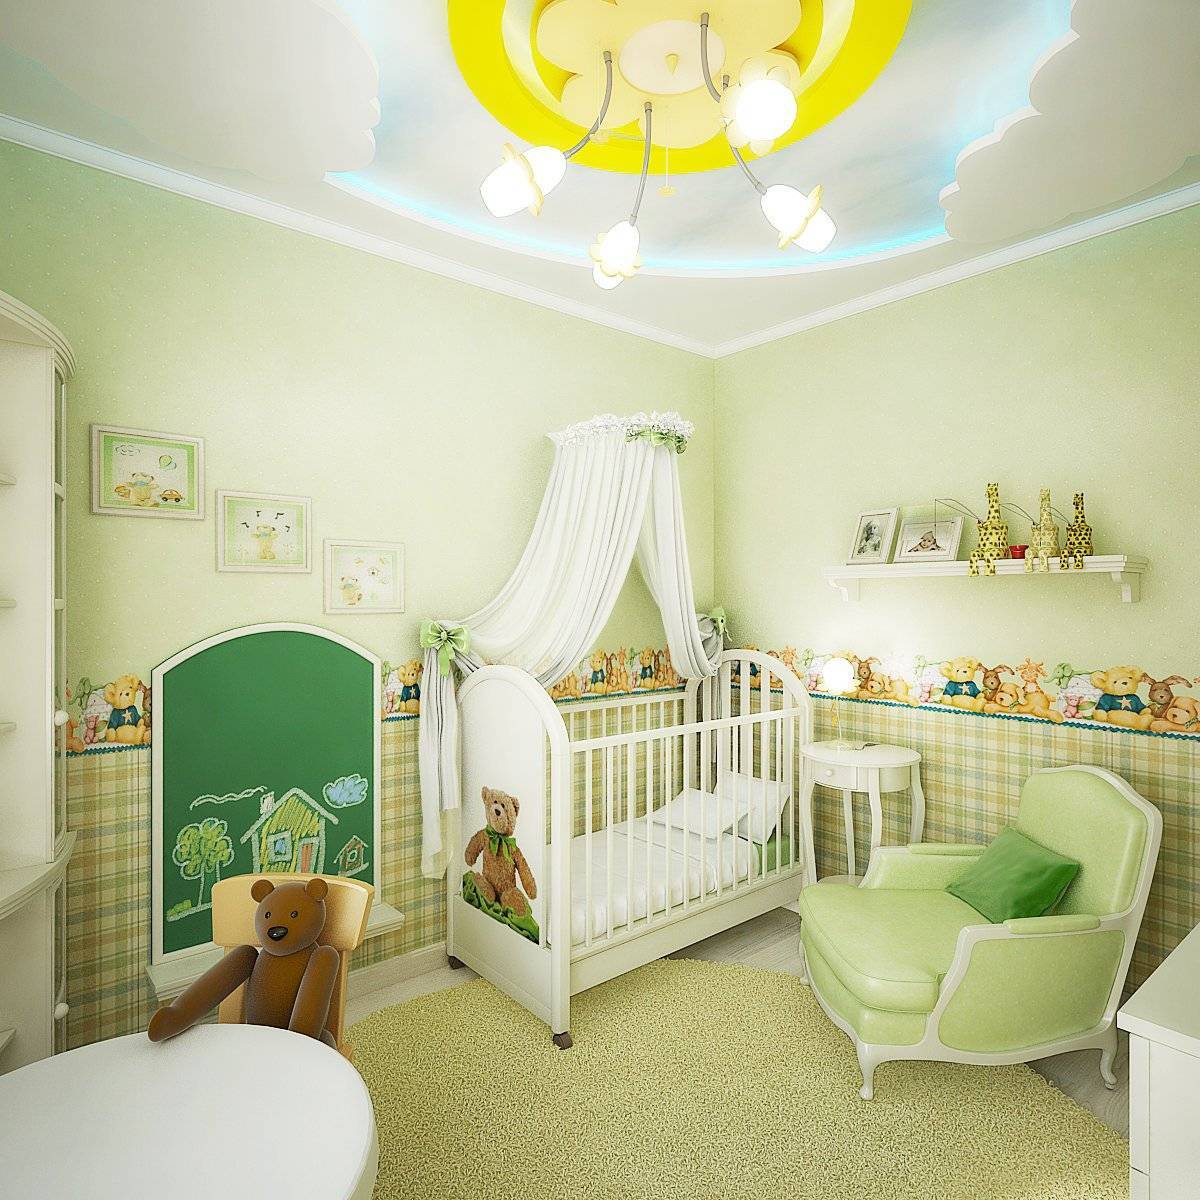 Обустроить детскую комнату для новорожденного